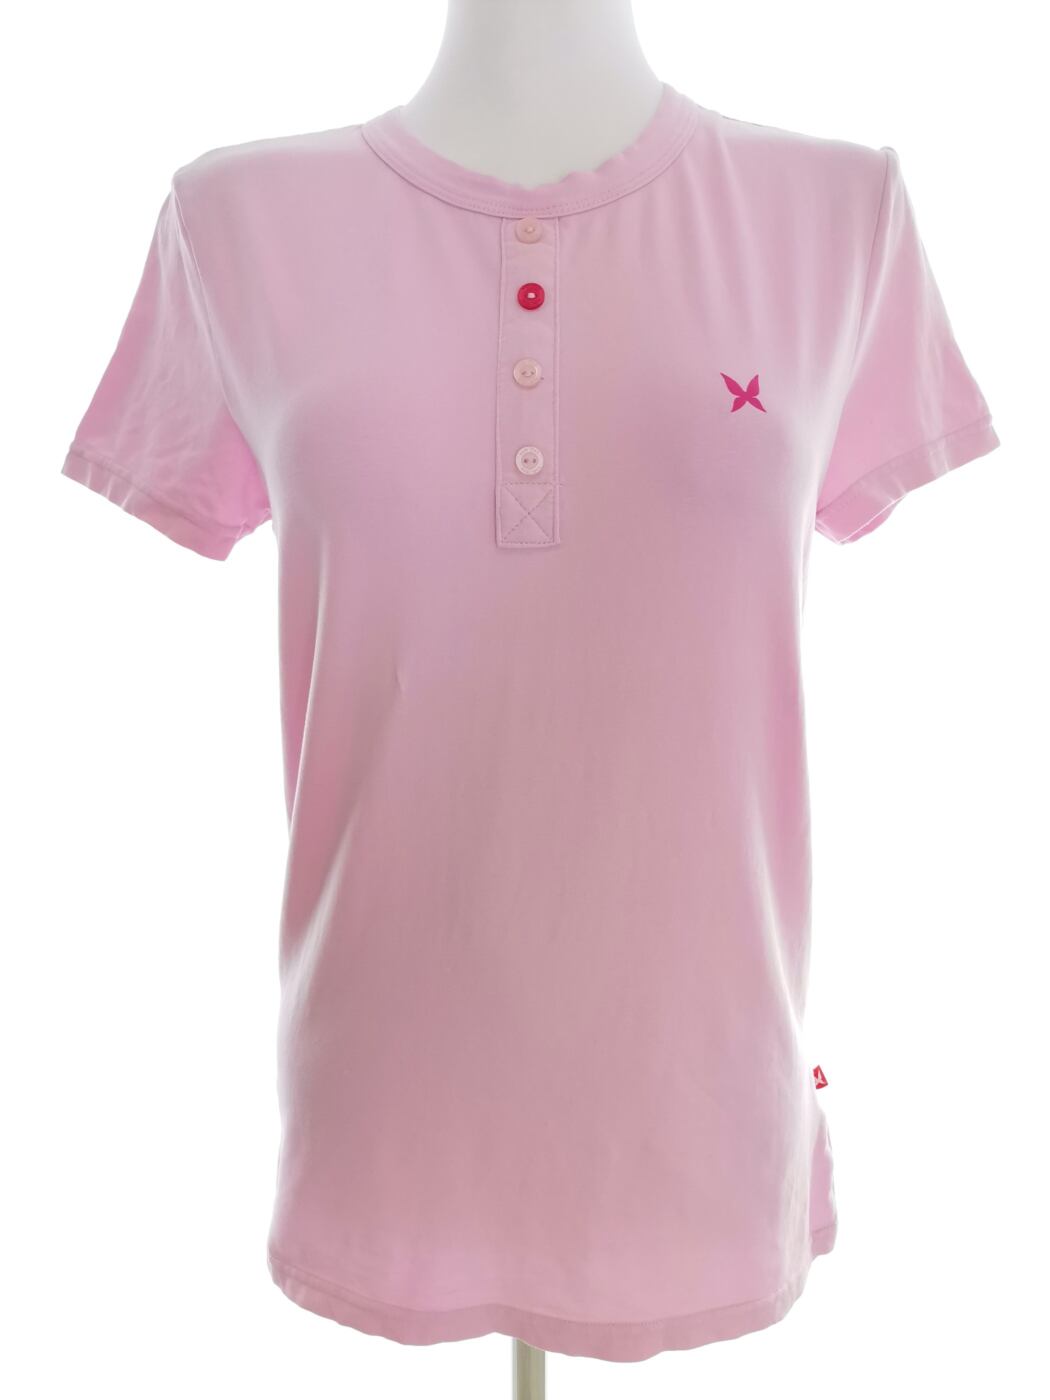 Kari Traa Rozmiar M Kolor Różowy Crew Neck T-Shirt Krótki rękaw Materiał Bawełna